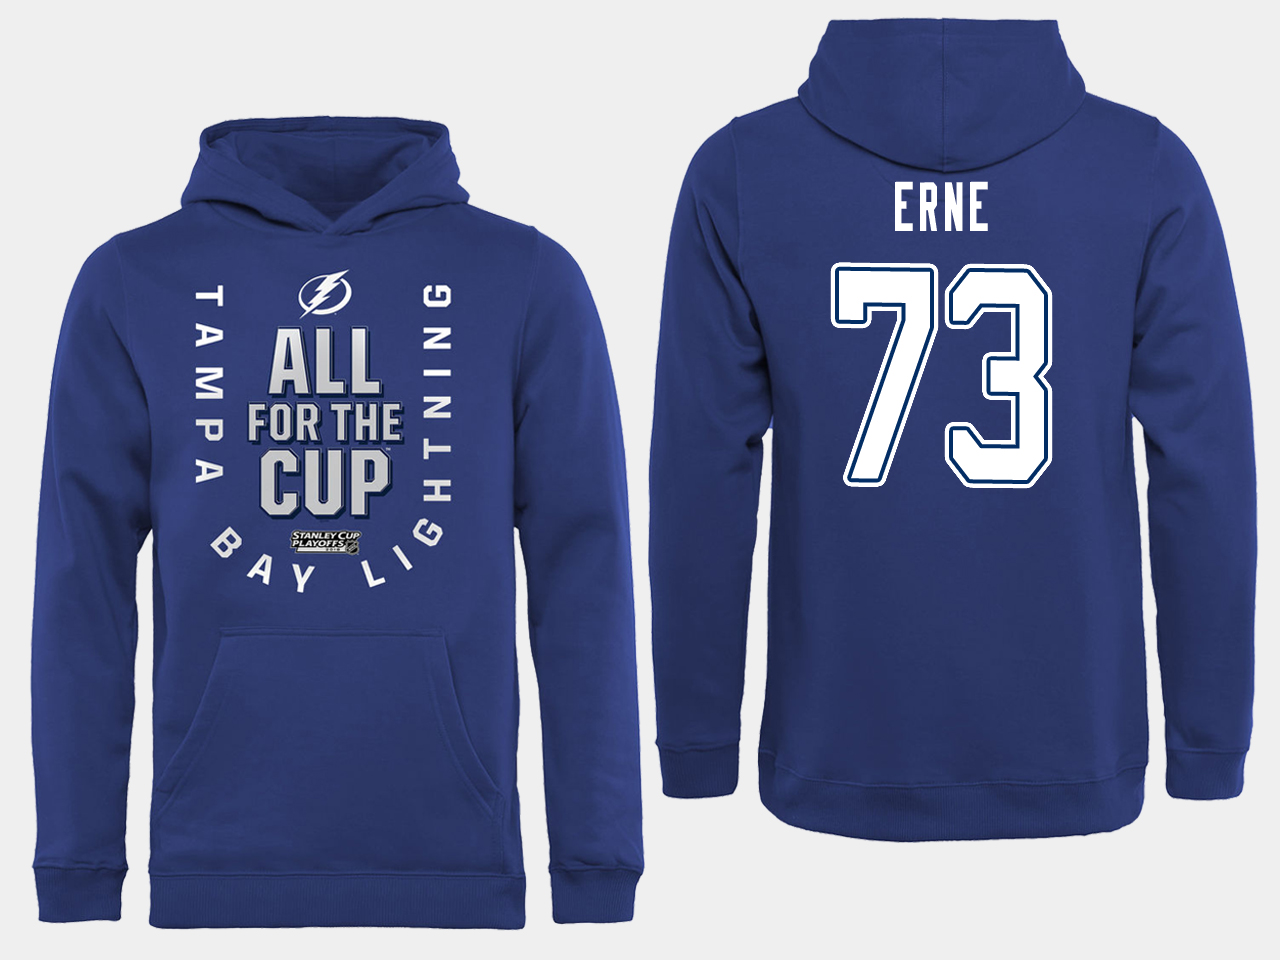 NHL Men adidas Tampa Bay Lightning #73 Erne blue All for the Cup Hoodie->tampa bay lightning->NHL Jersey